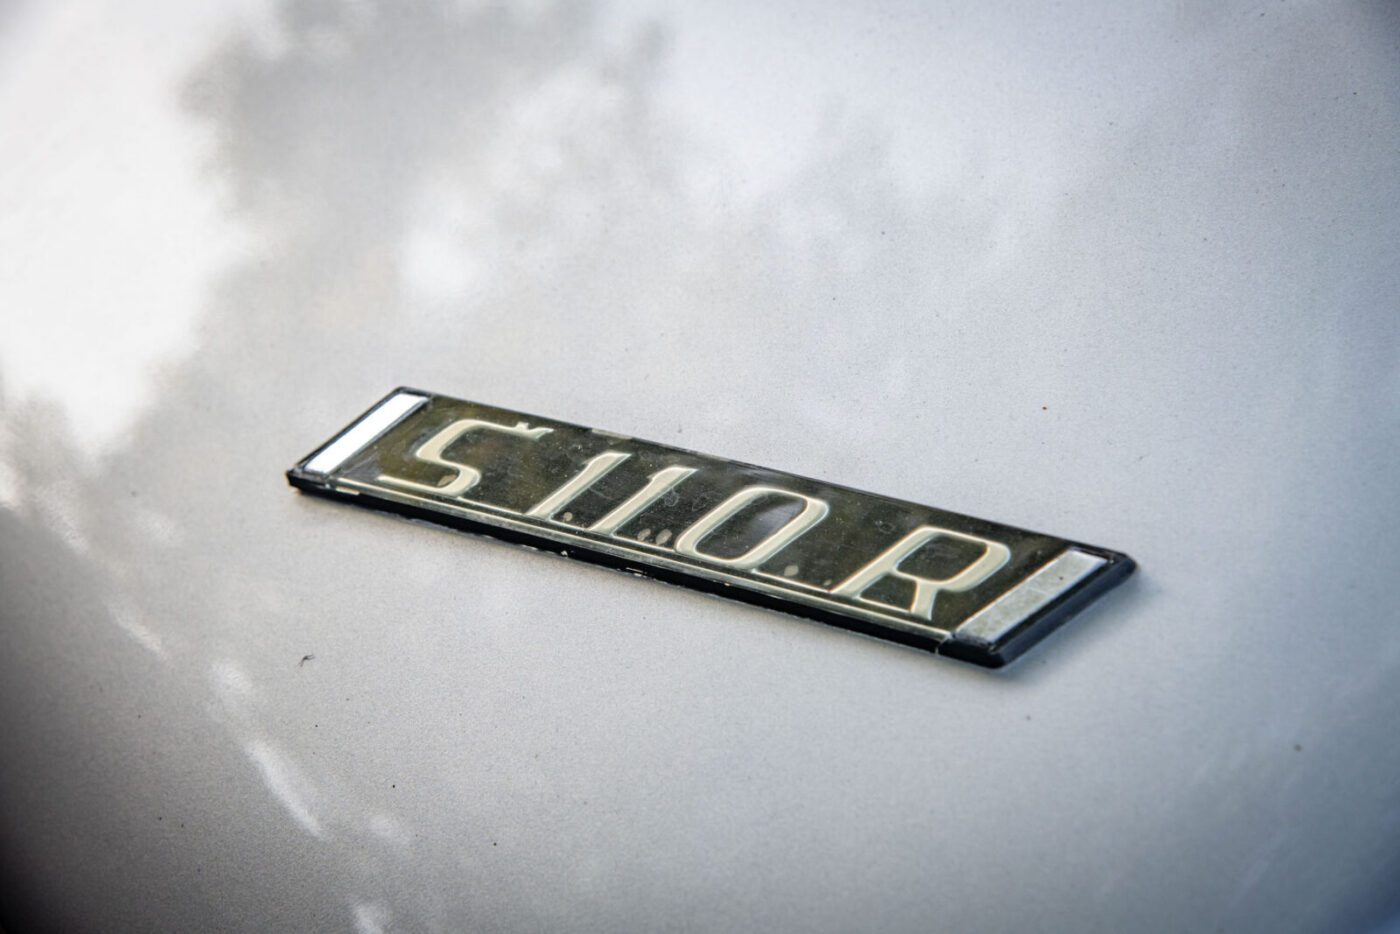 Skoda S110R badge